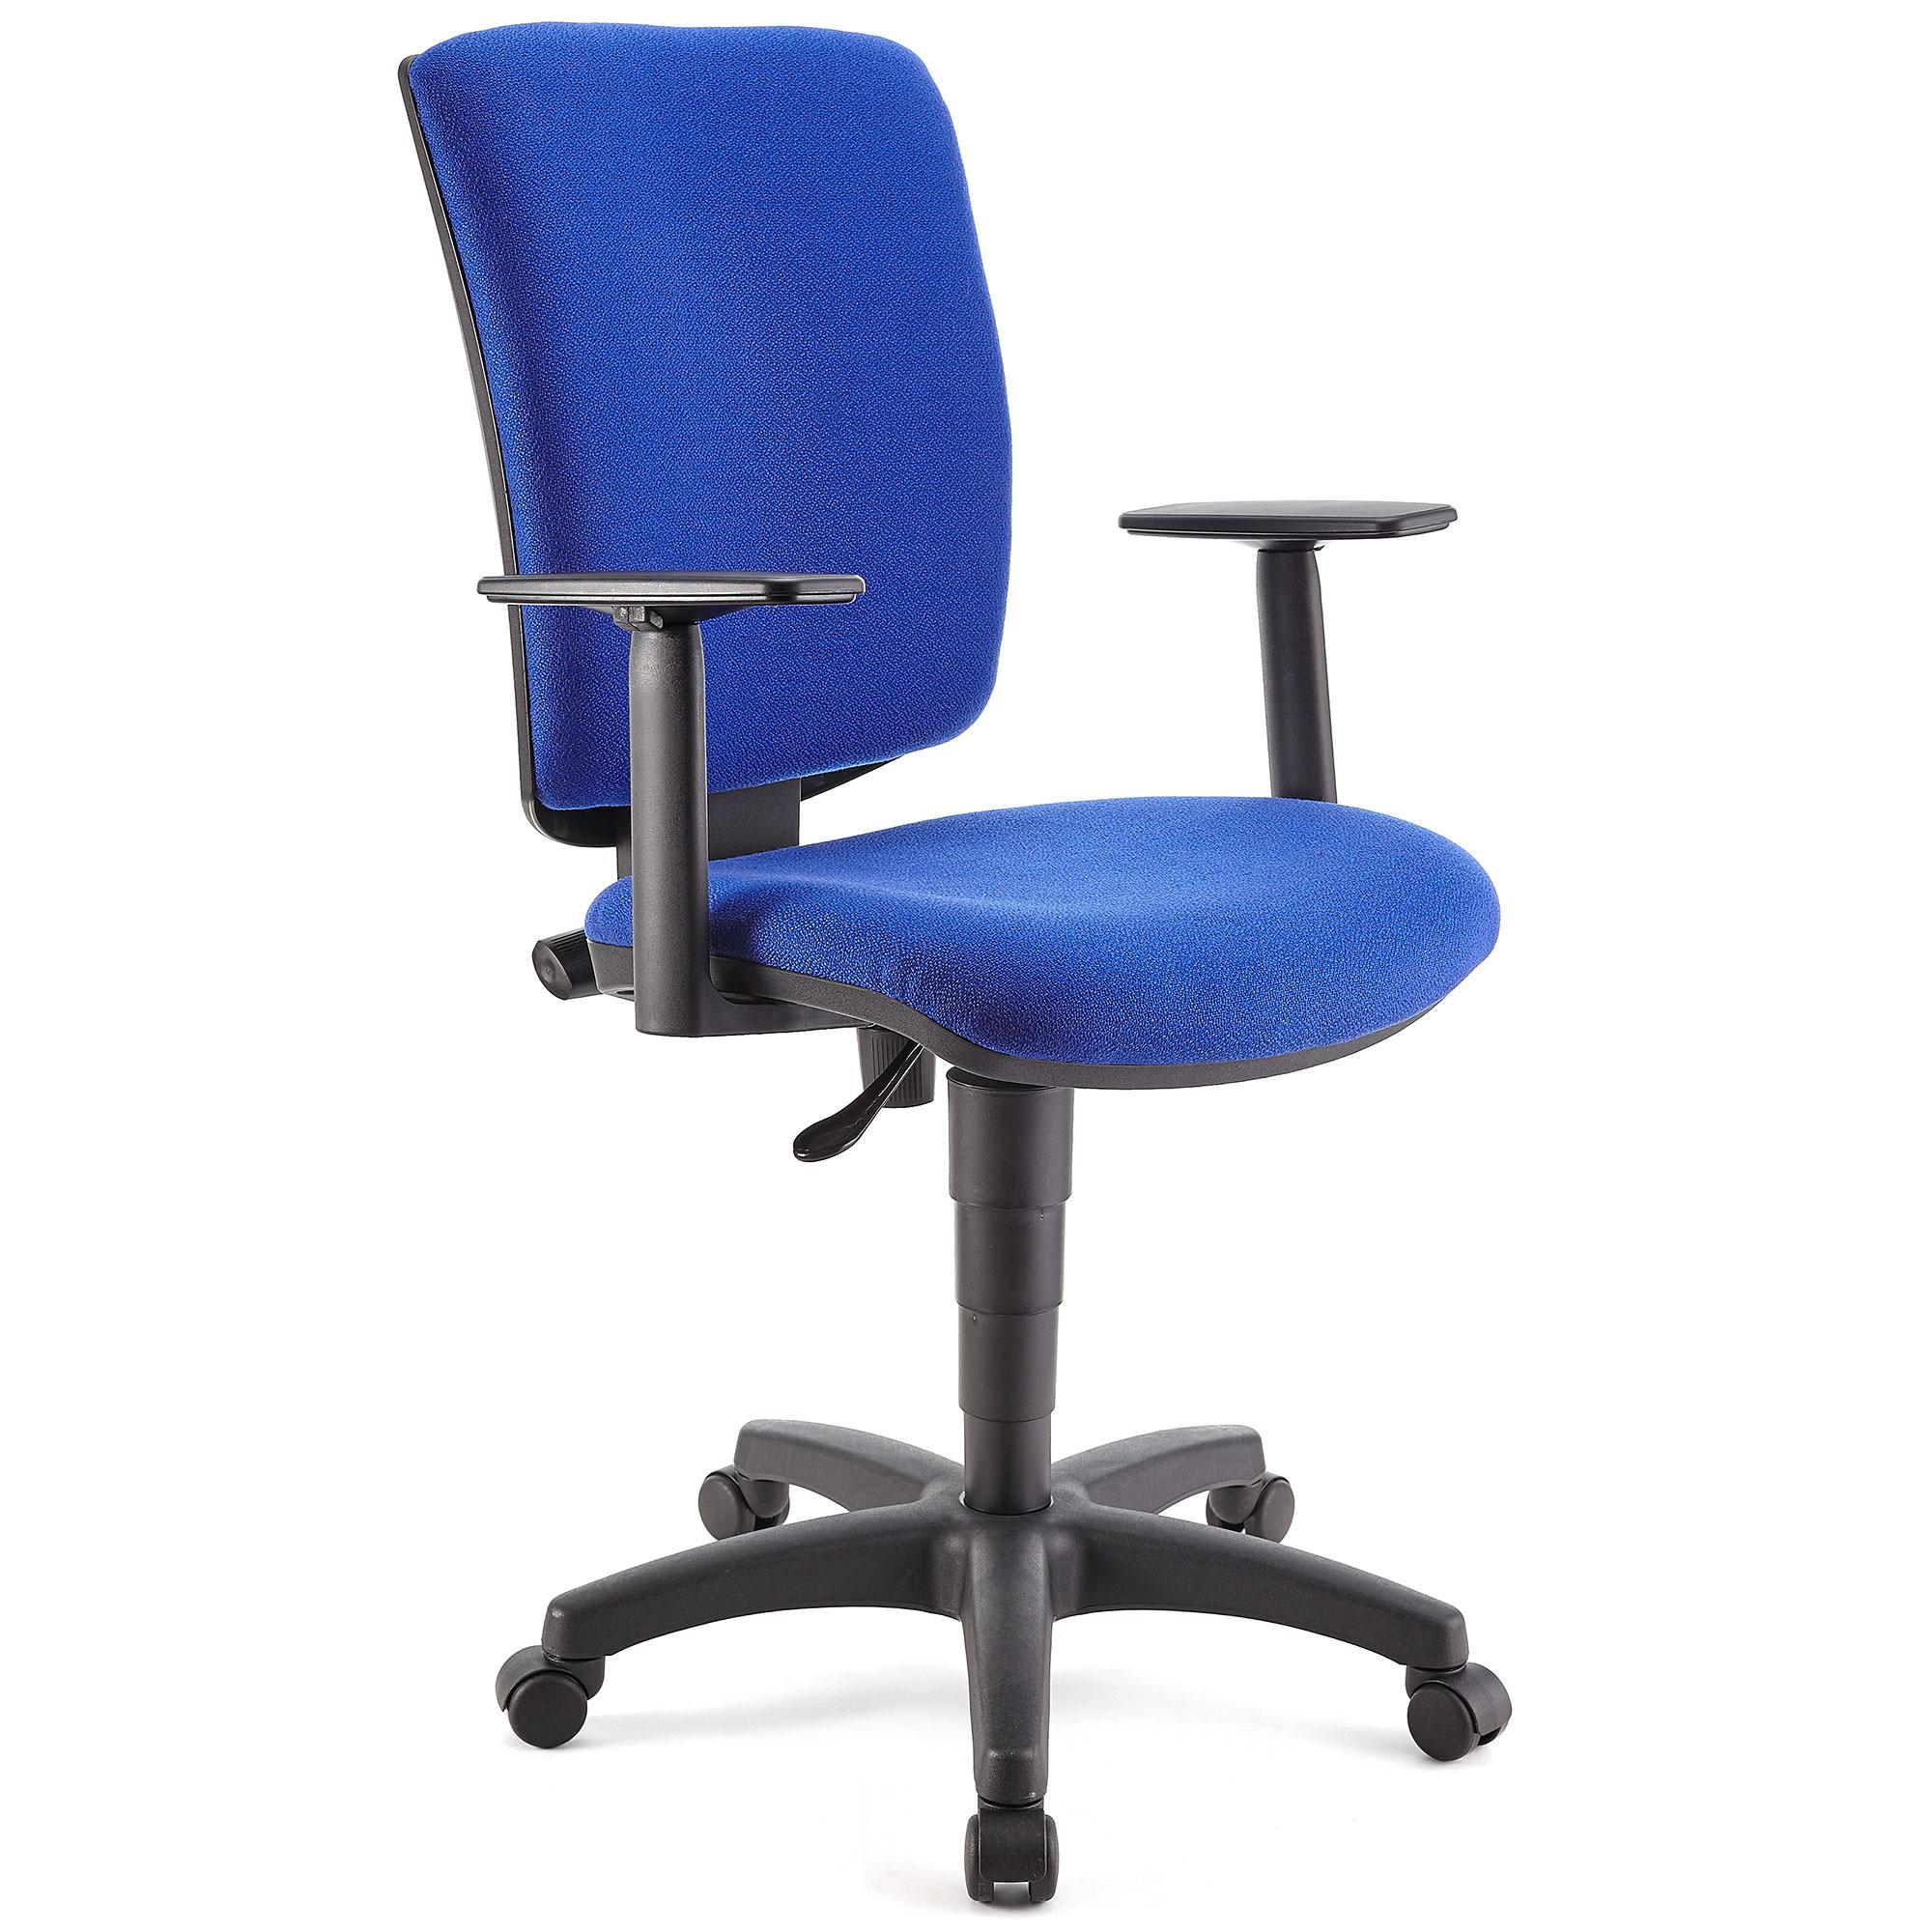 Bürostuhl ATLAS PLUS STOFF, verstellbare Rücken- und Armlehnen, dicke Polsterung, Farbe Blau